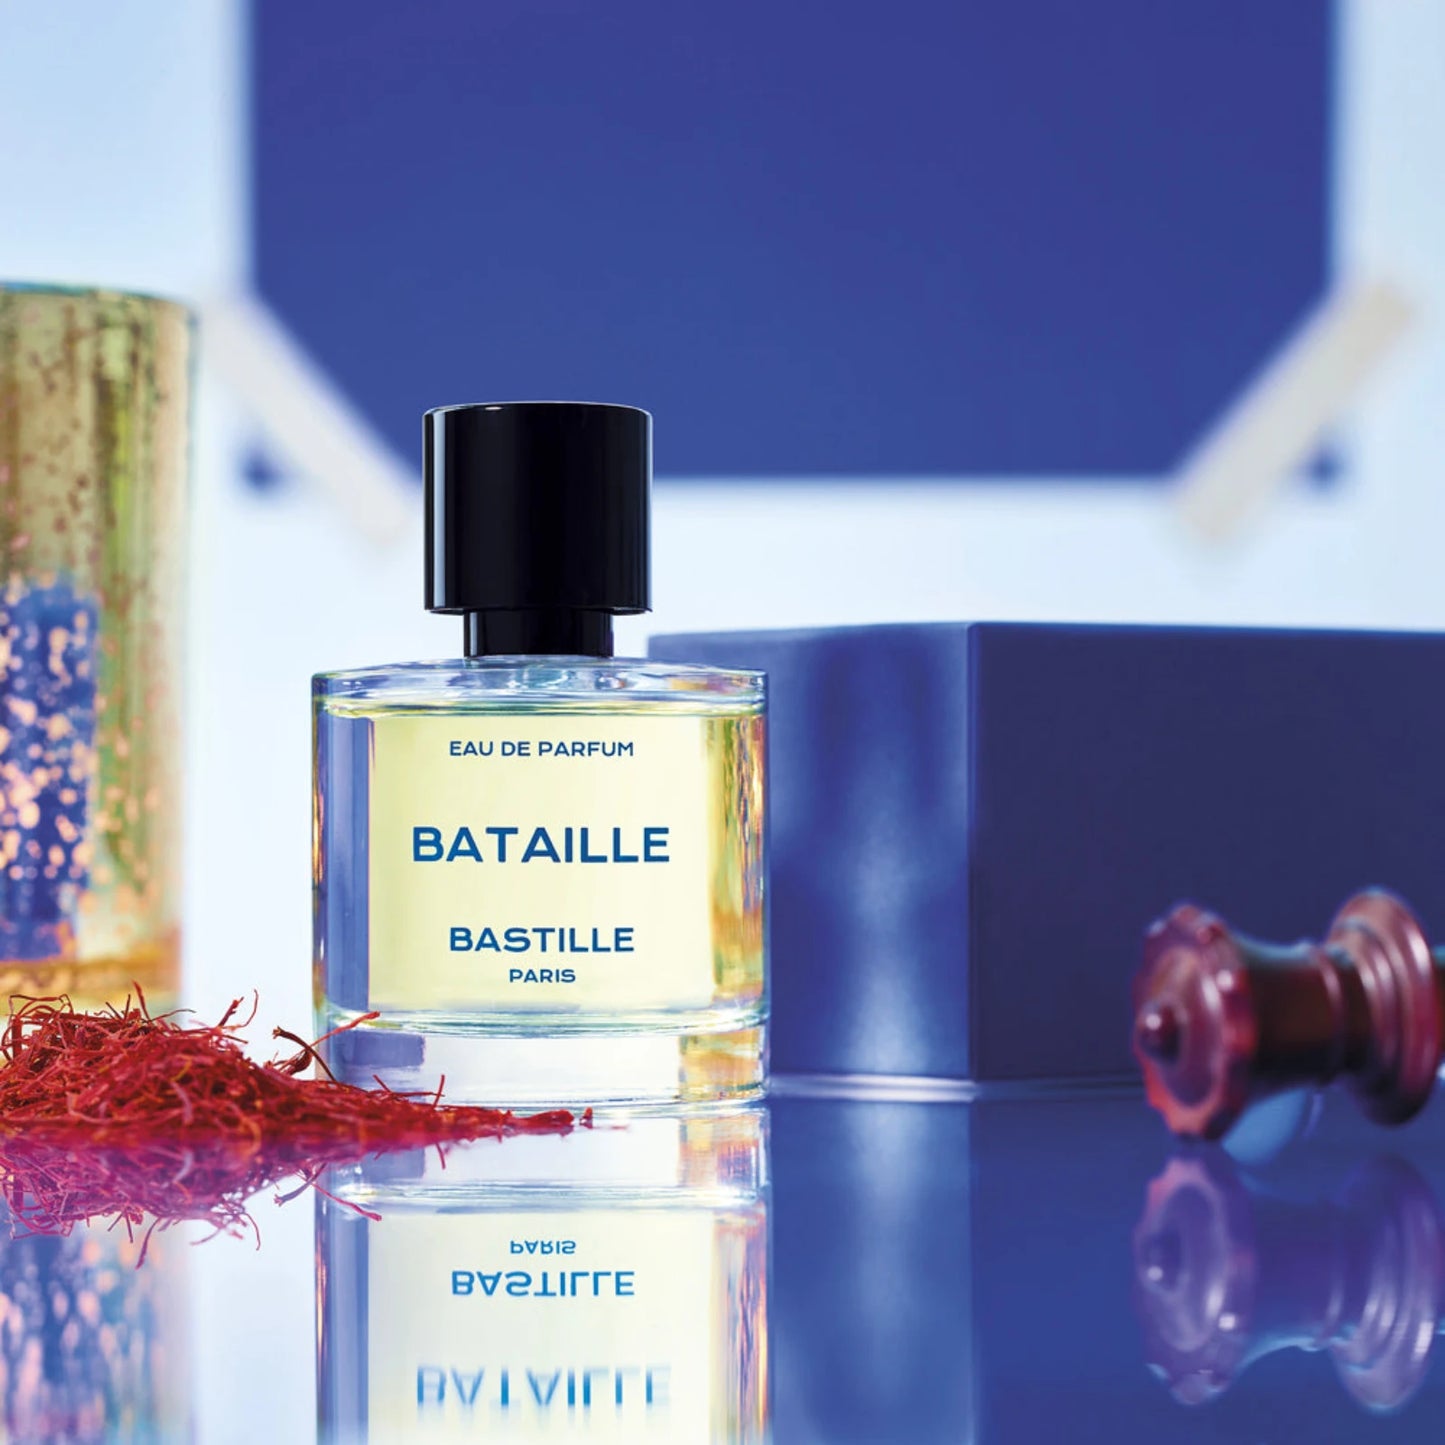 Bataille Eau De Parfum fra Bastille Paris (miljø med ingredienser)